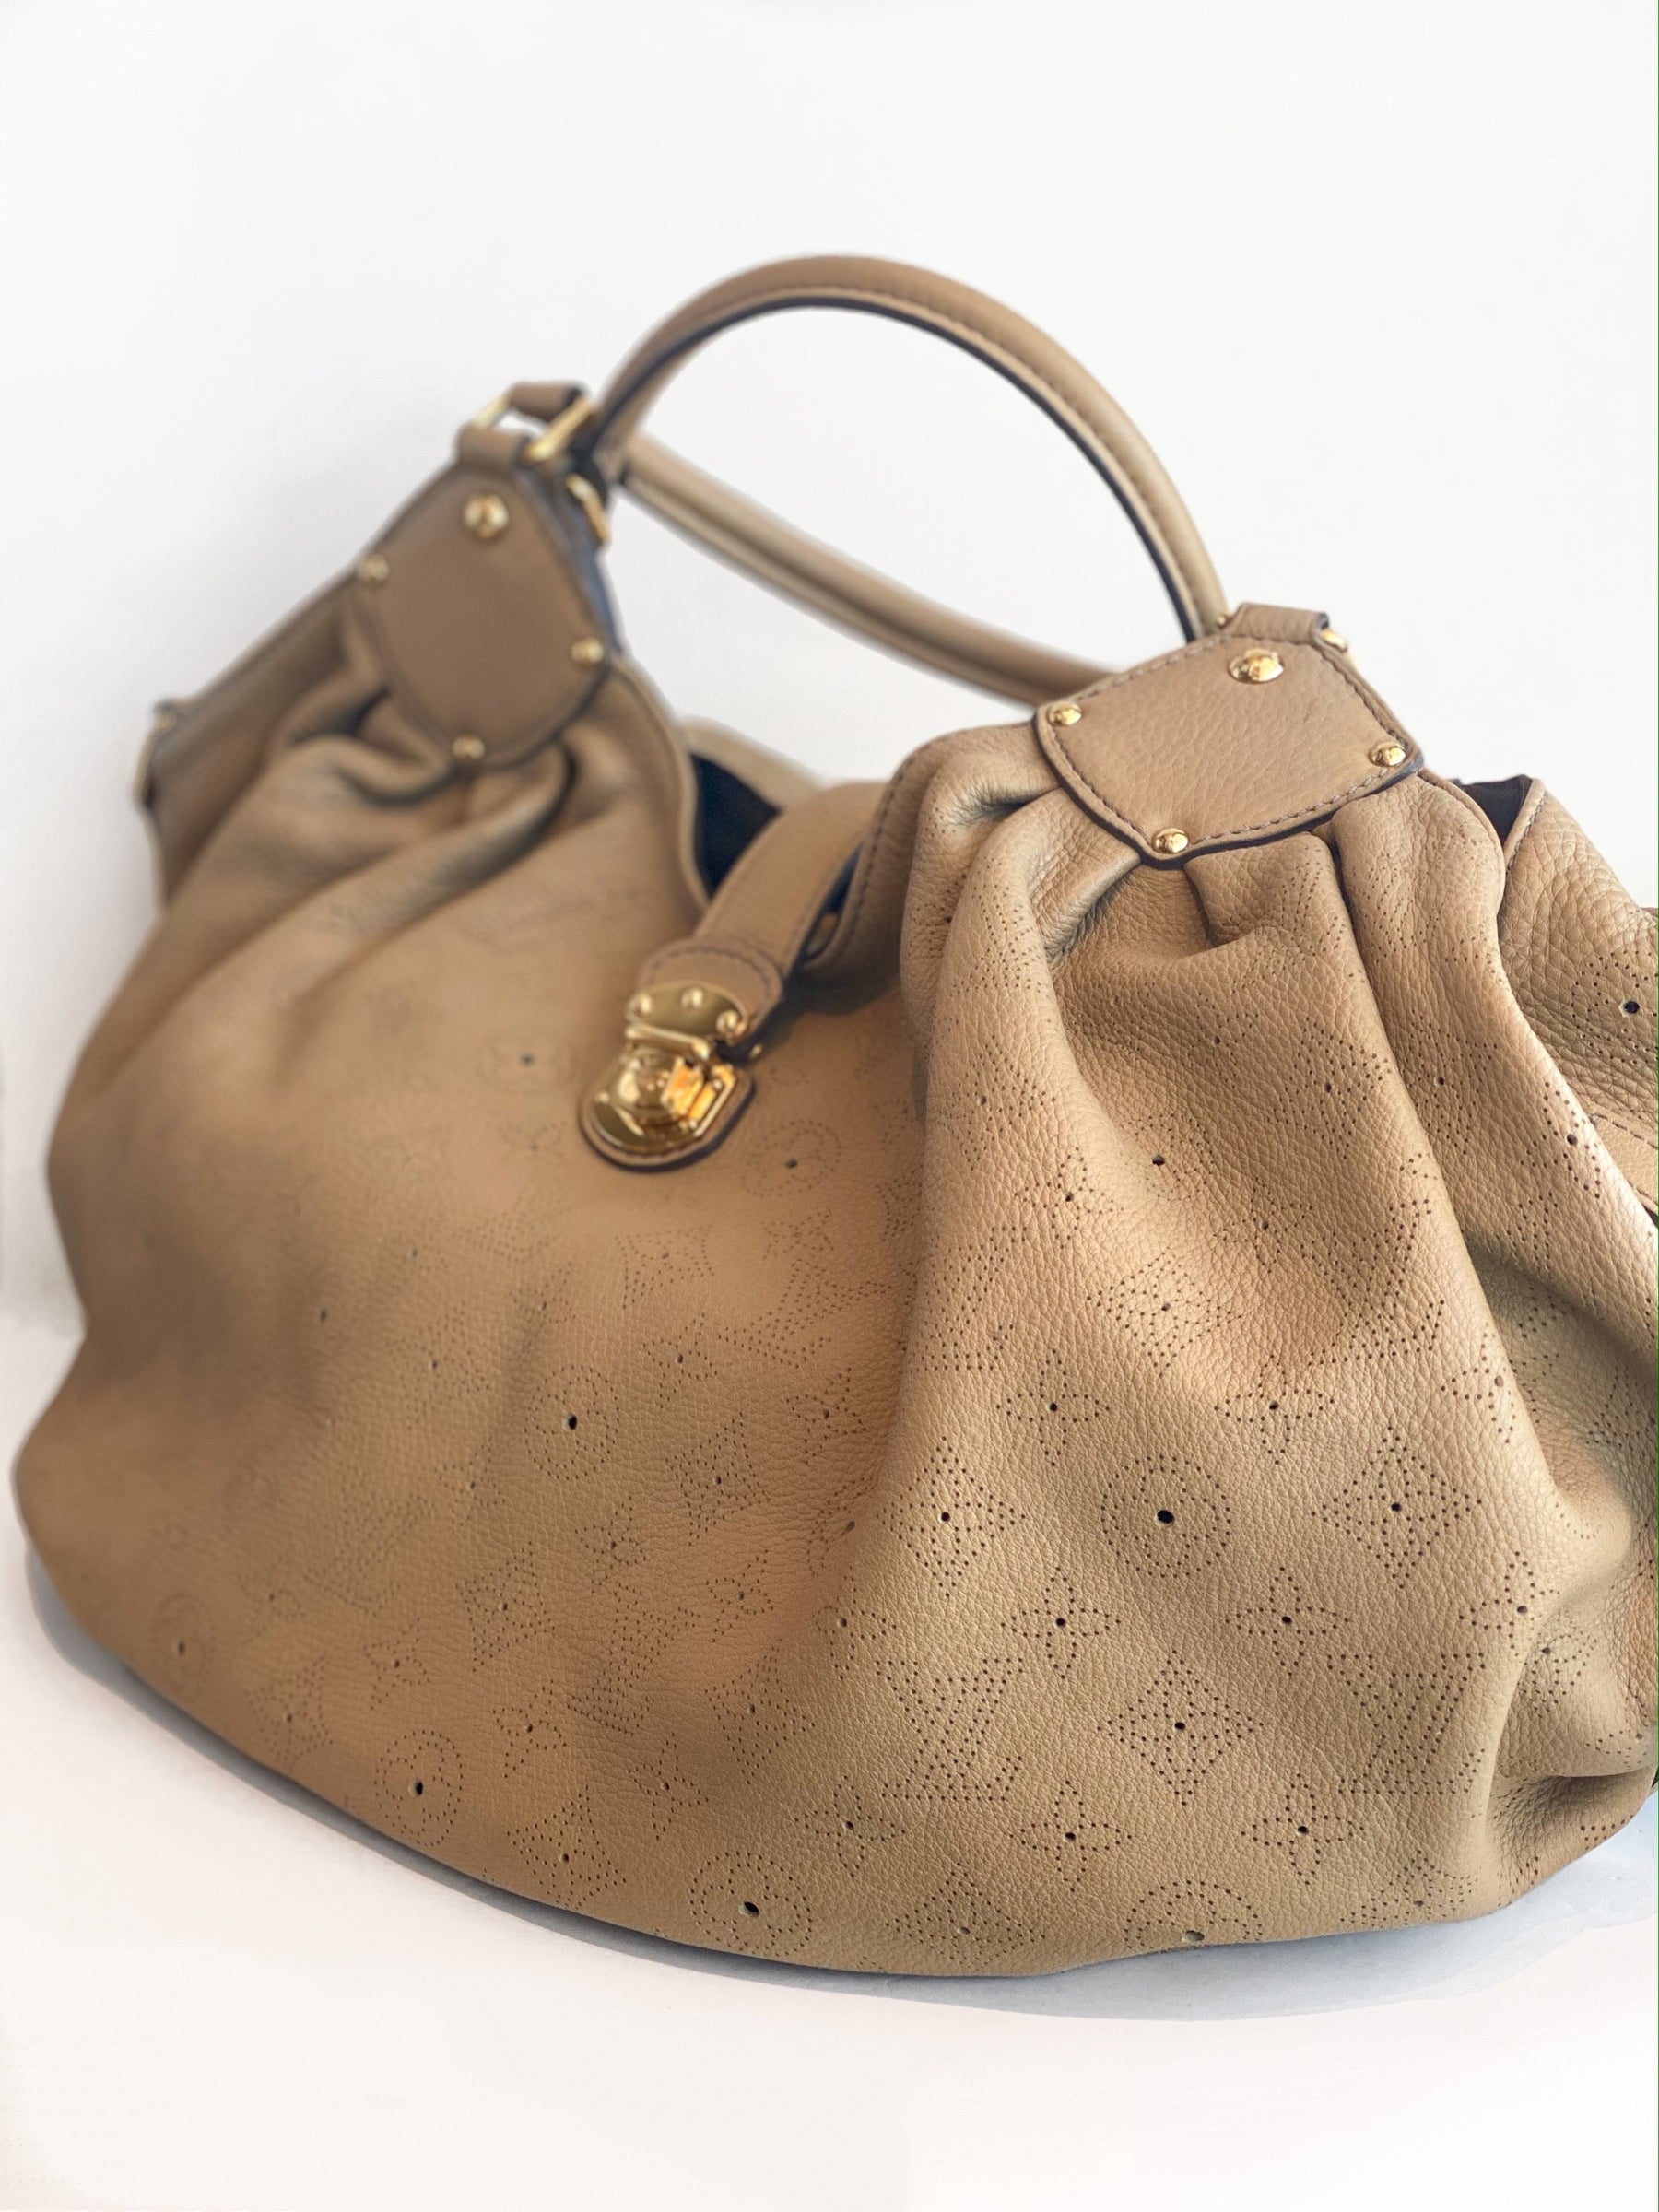 Louis Vuitton Mahina Hobo Bag Monogram Tan Leather Side of Bag